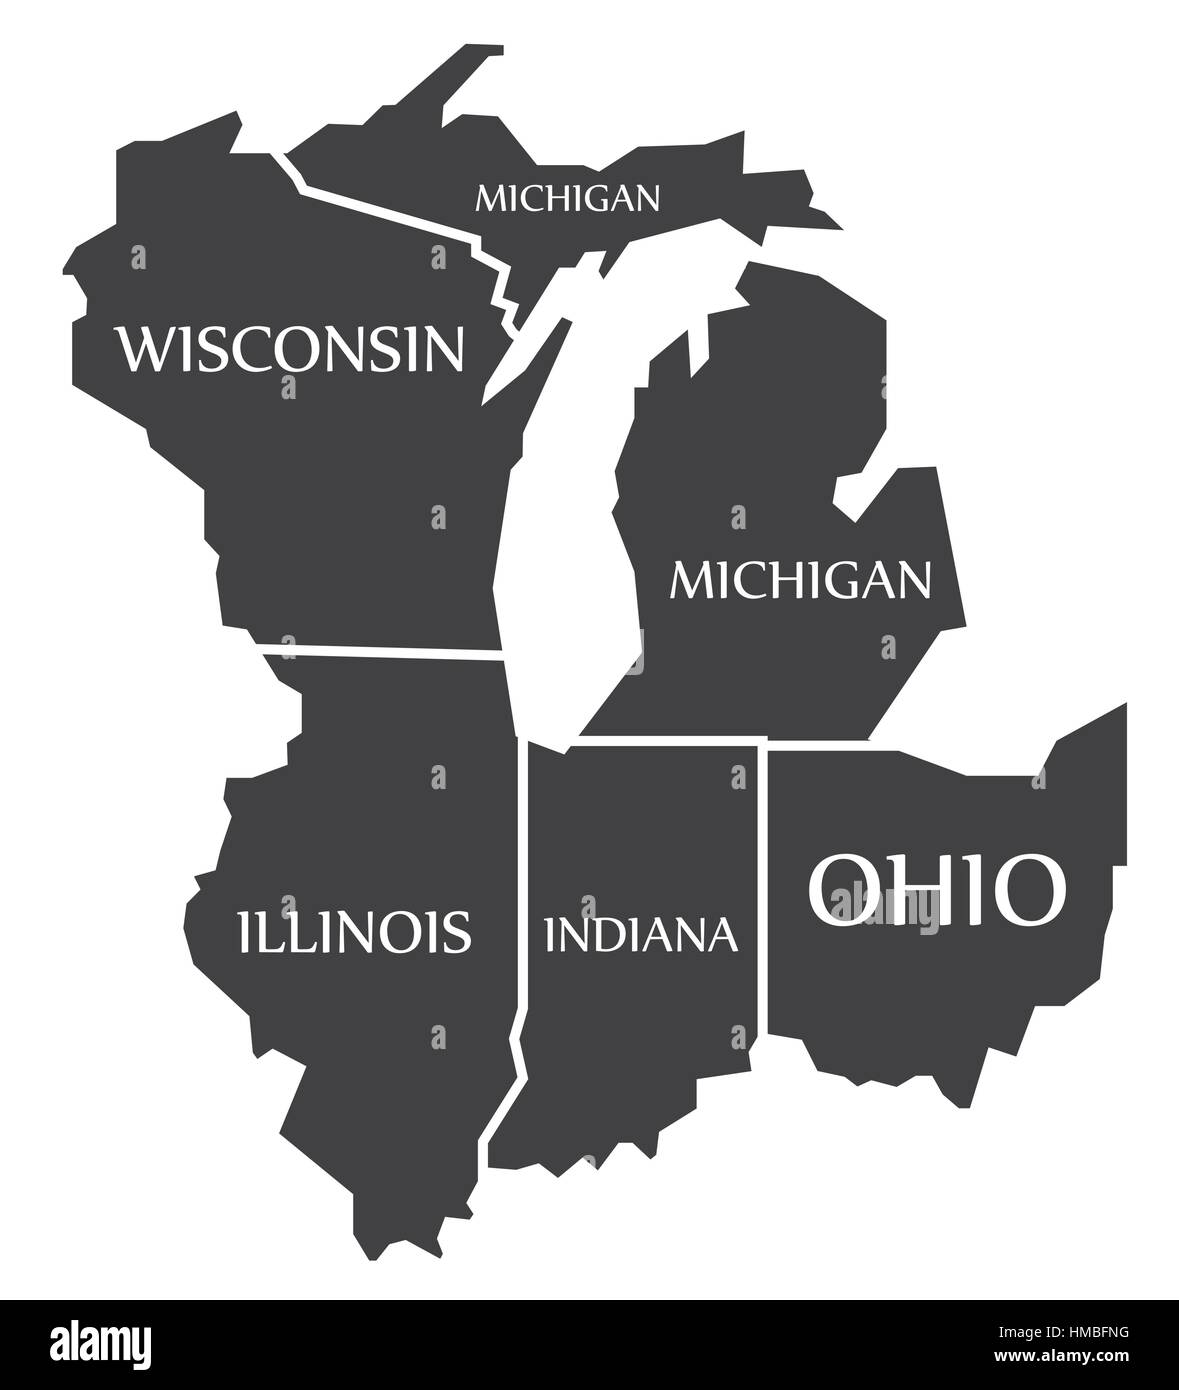 Michigan - Wisconsin - Illinois - Indiana - Ohio site étiqueté illustration noir Illustration de Vecteur